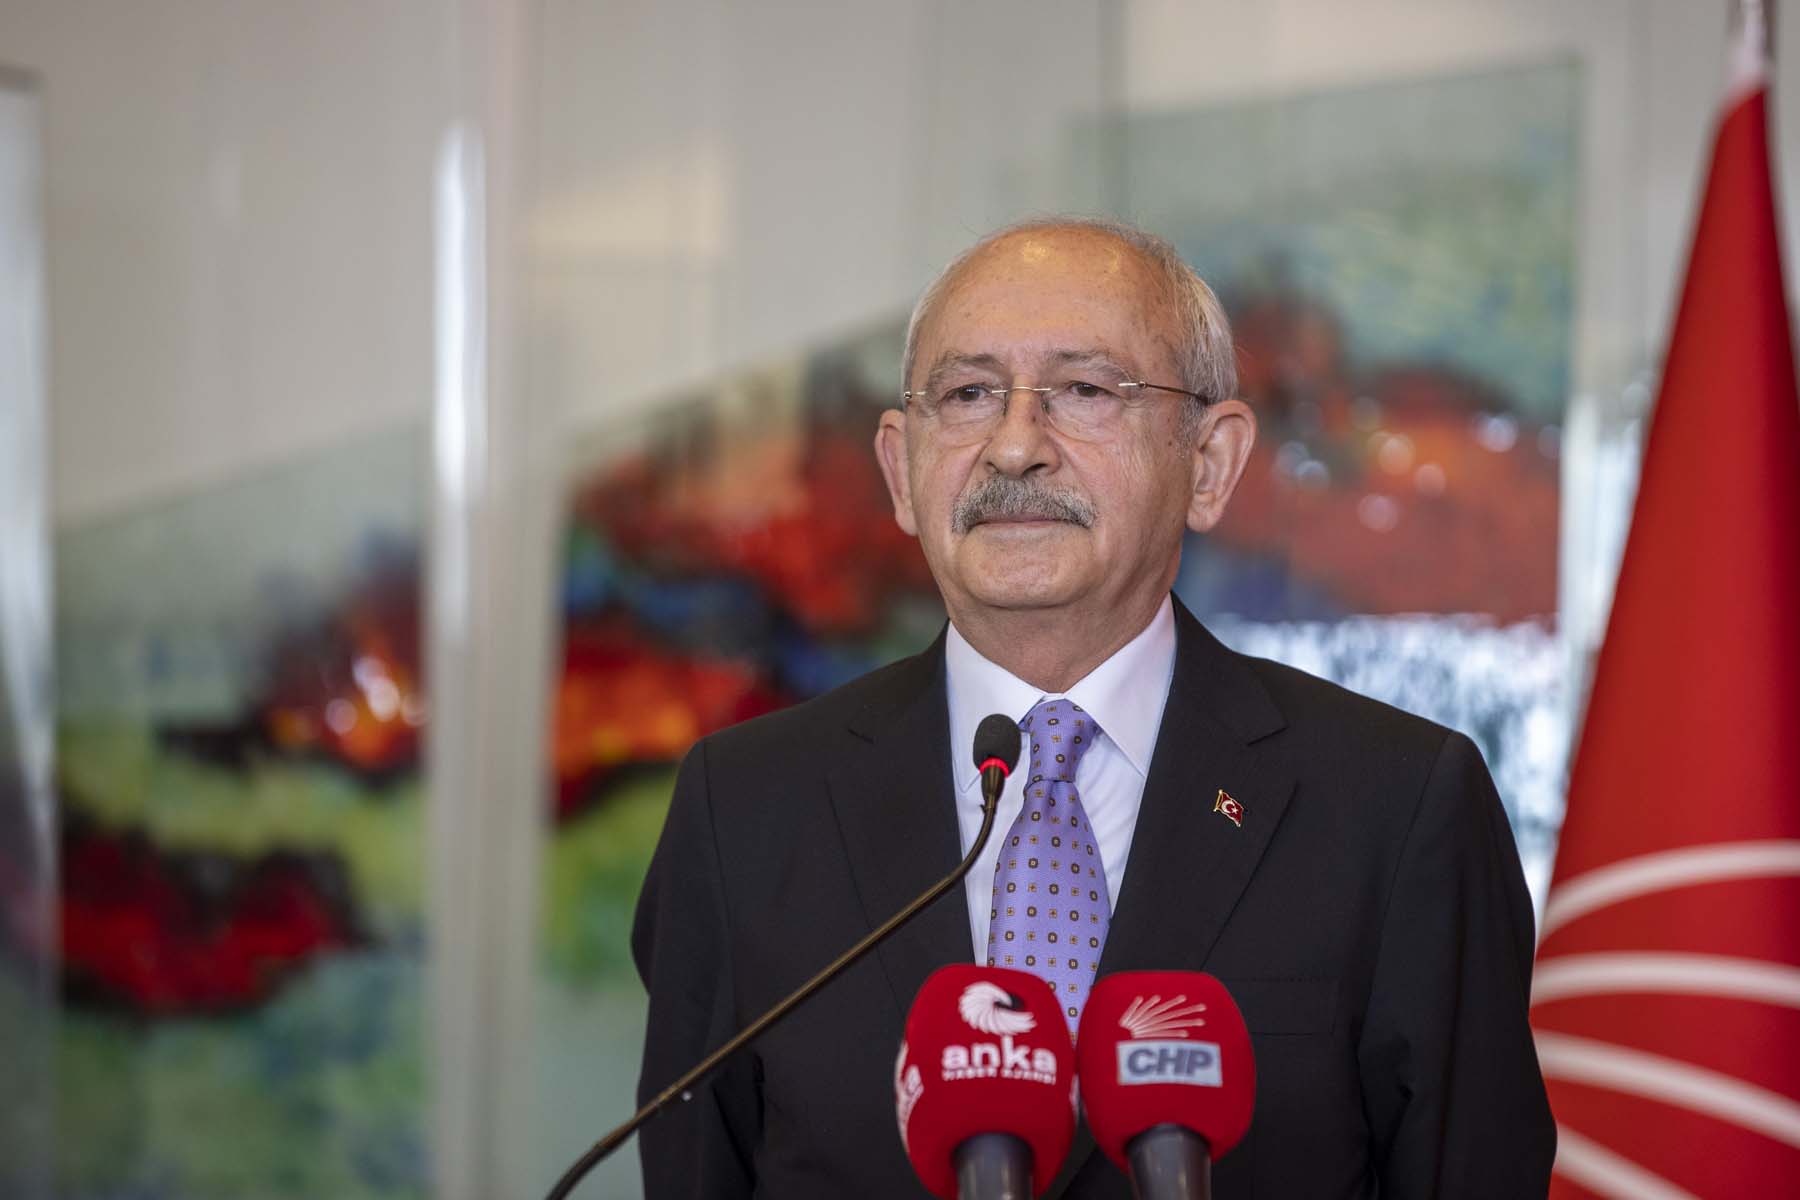 Kılıçdaroğlu, Terörle mücadele yeniden şekillendirilmeli dedi, Bakan Soylu'dan cevap gecikmedi: Sana bunları kim söyletiyor? 